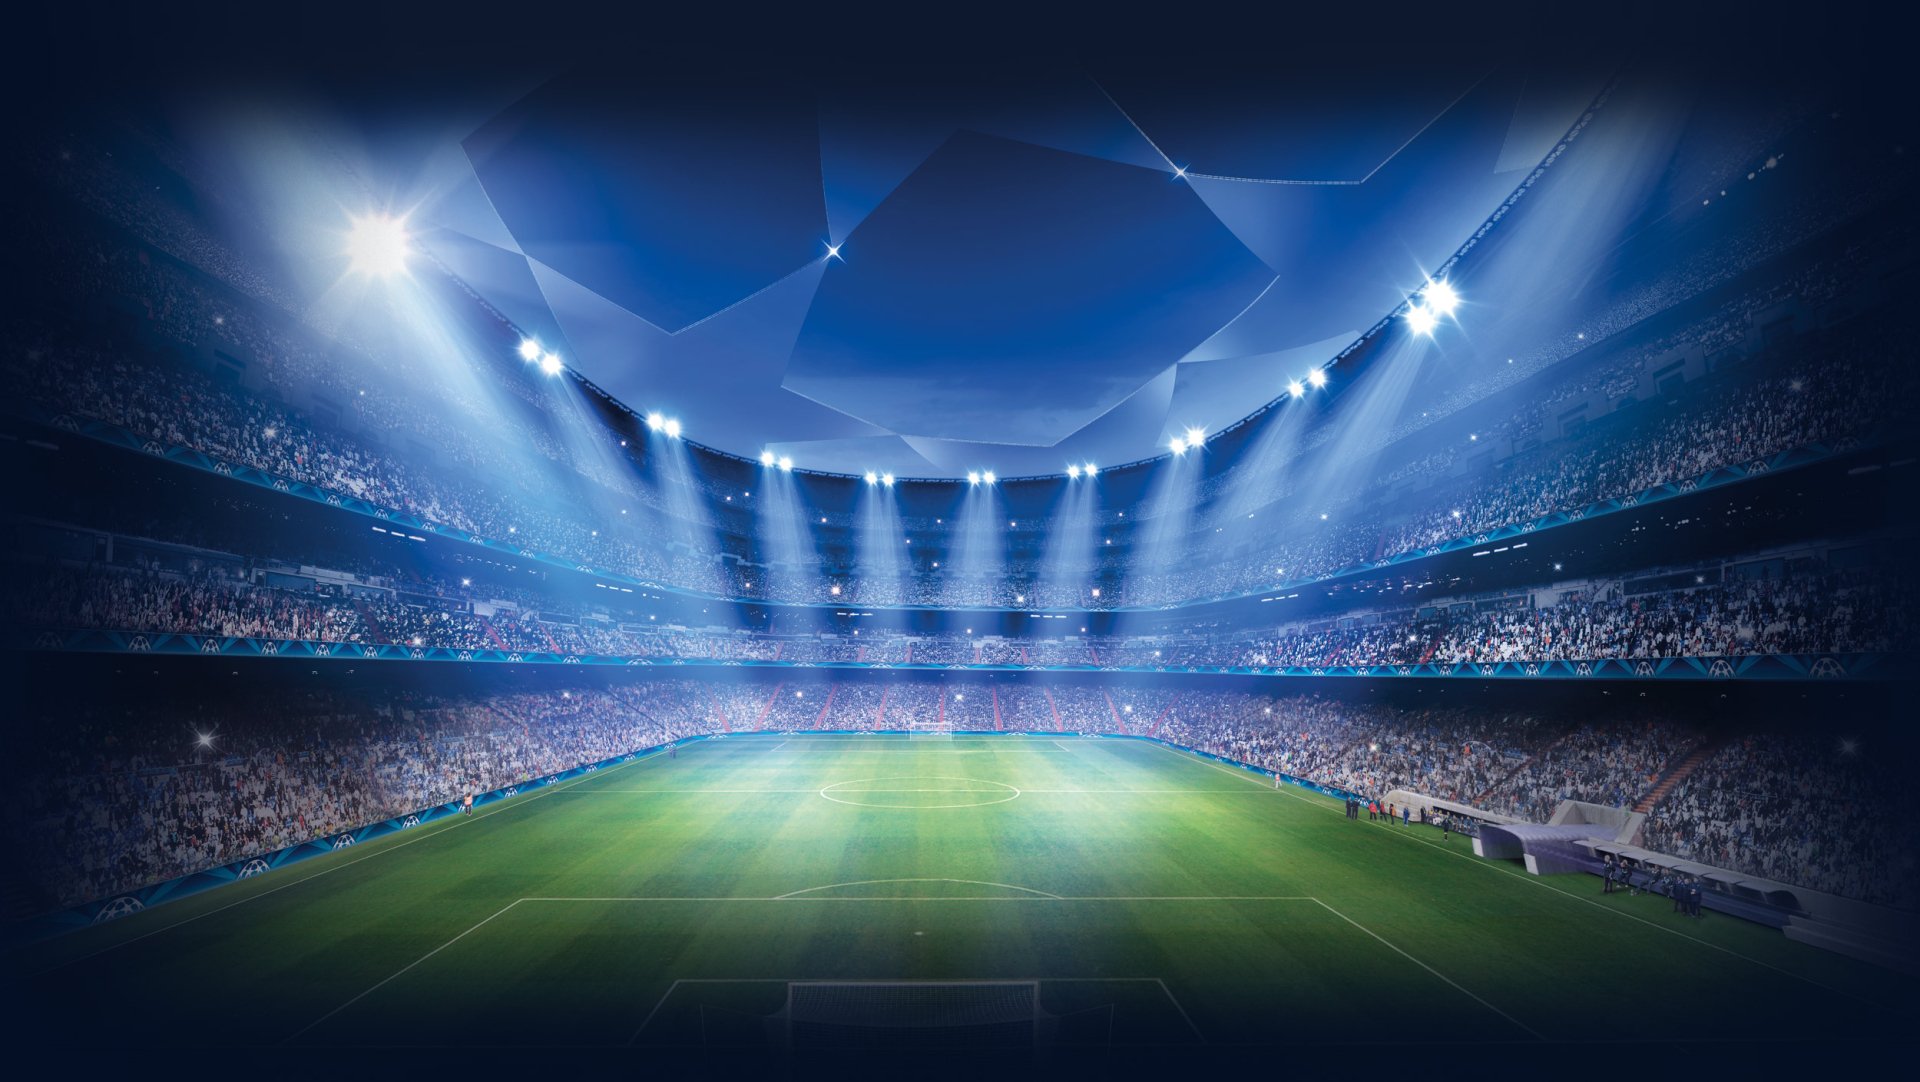 UEFA Champions League Fondos de pantalla HD y Fondos de Escritorio